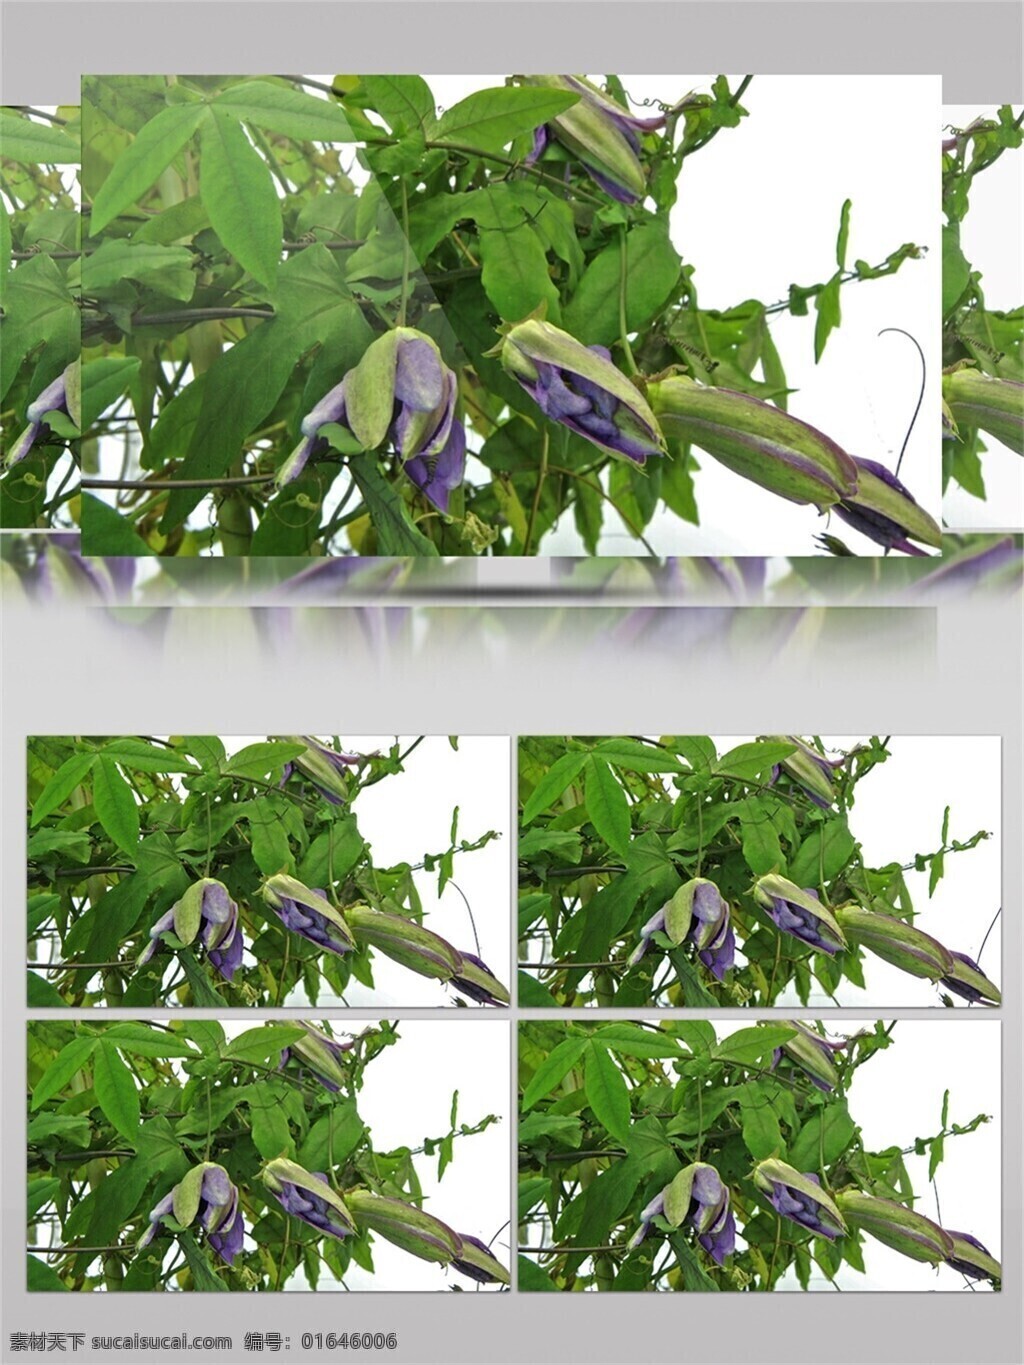 半 开 紫色 花苞 视频 音效 视频素材 绿色 植物 树木 生动 视频音效 近拍